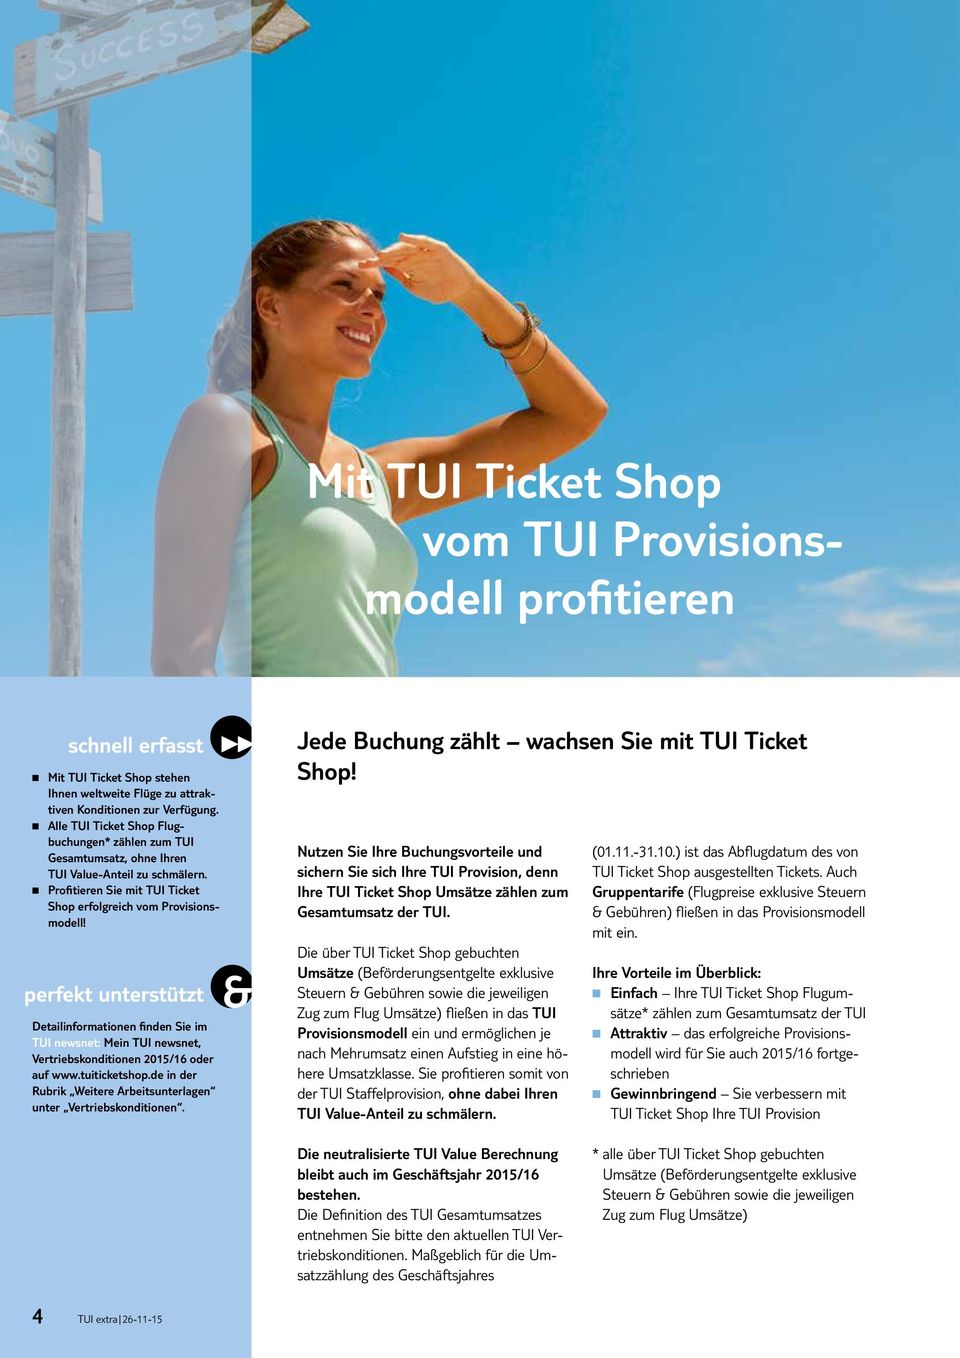 Detailinformationen finden Sie im TUI newsnet: Mein TUI newsnet, Vertriebskonditionen 2015/16 oder auf www.tuiticketshop.de in der Rubrik Weitere Arbeitsunterlagen unter Vertriebskonditionen.